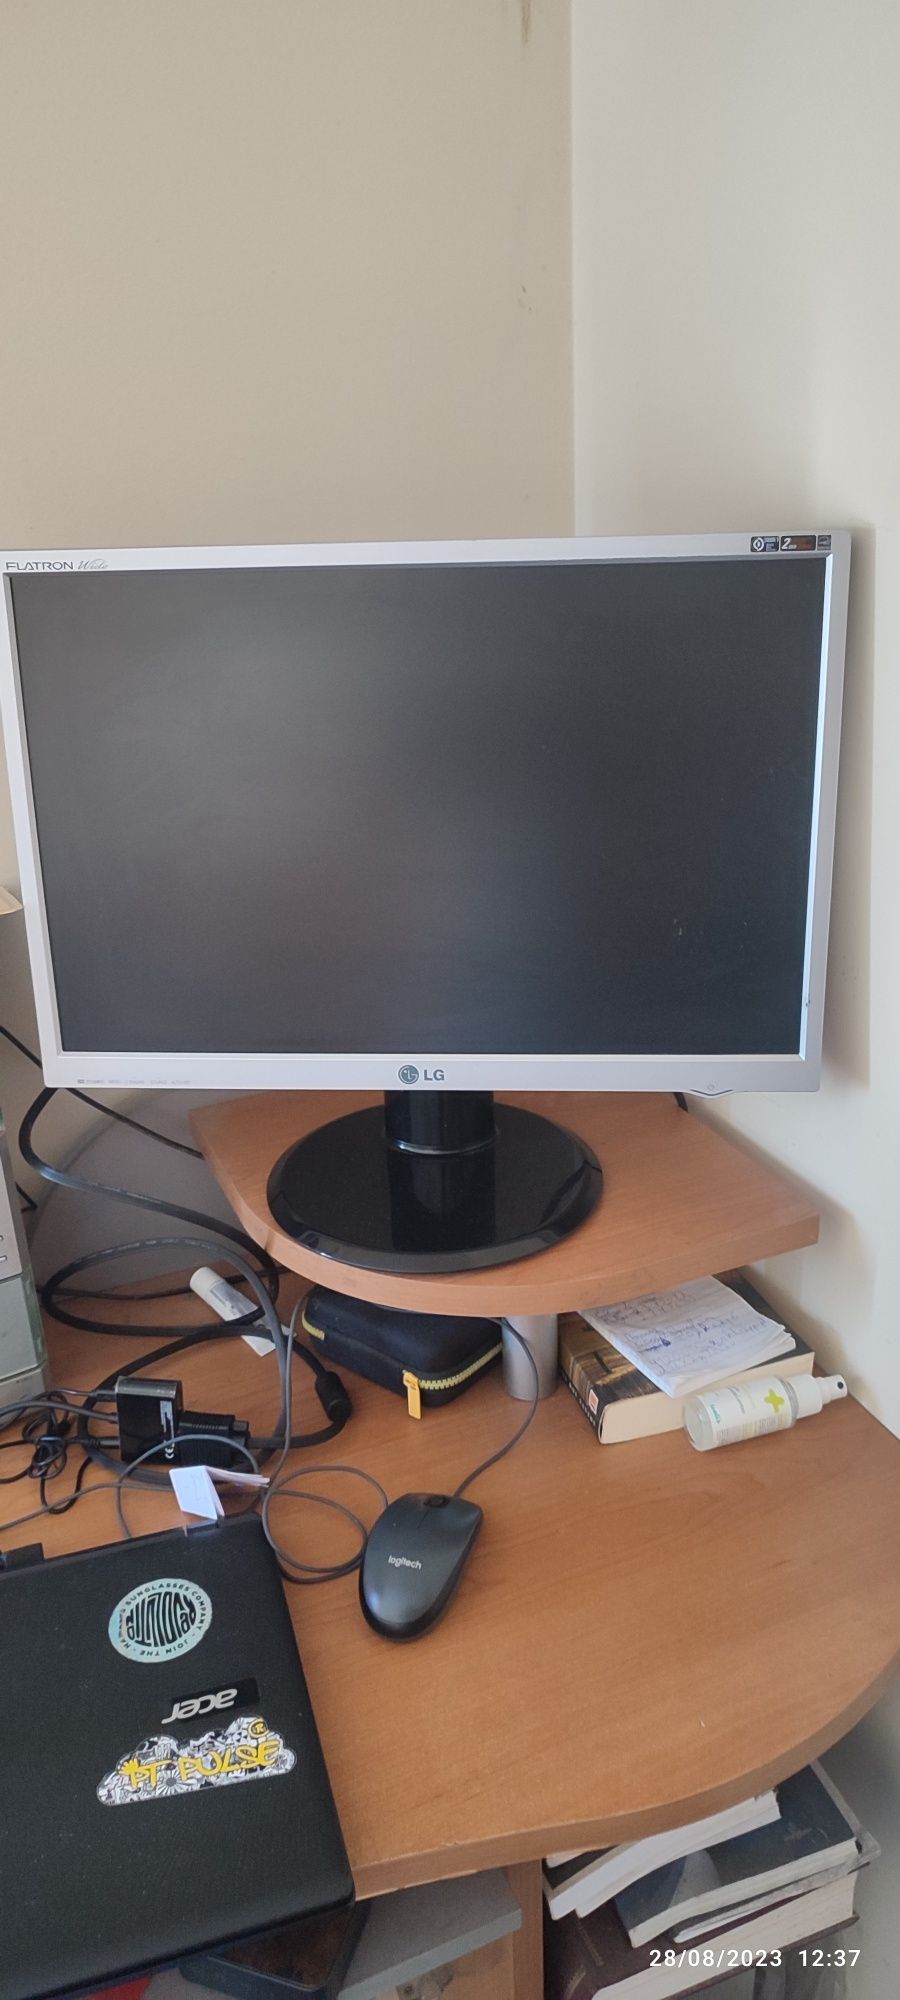 Vendo monitor+teclado sem fios e rato sem fios 
Tudo a funcionar perfe